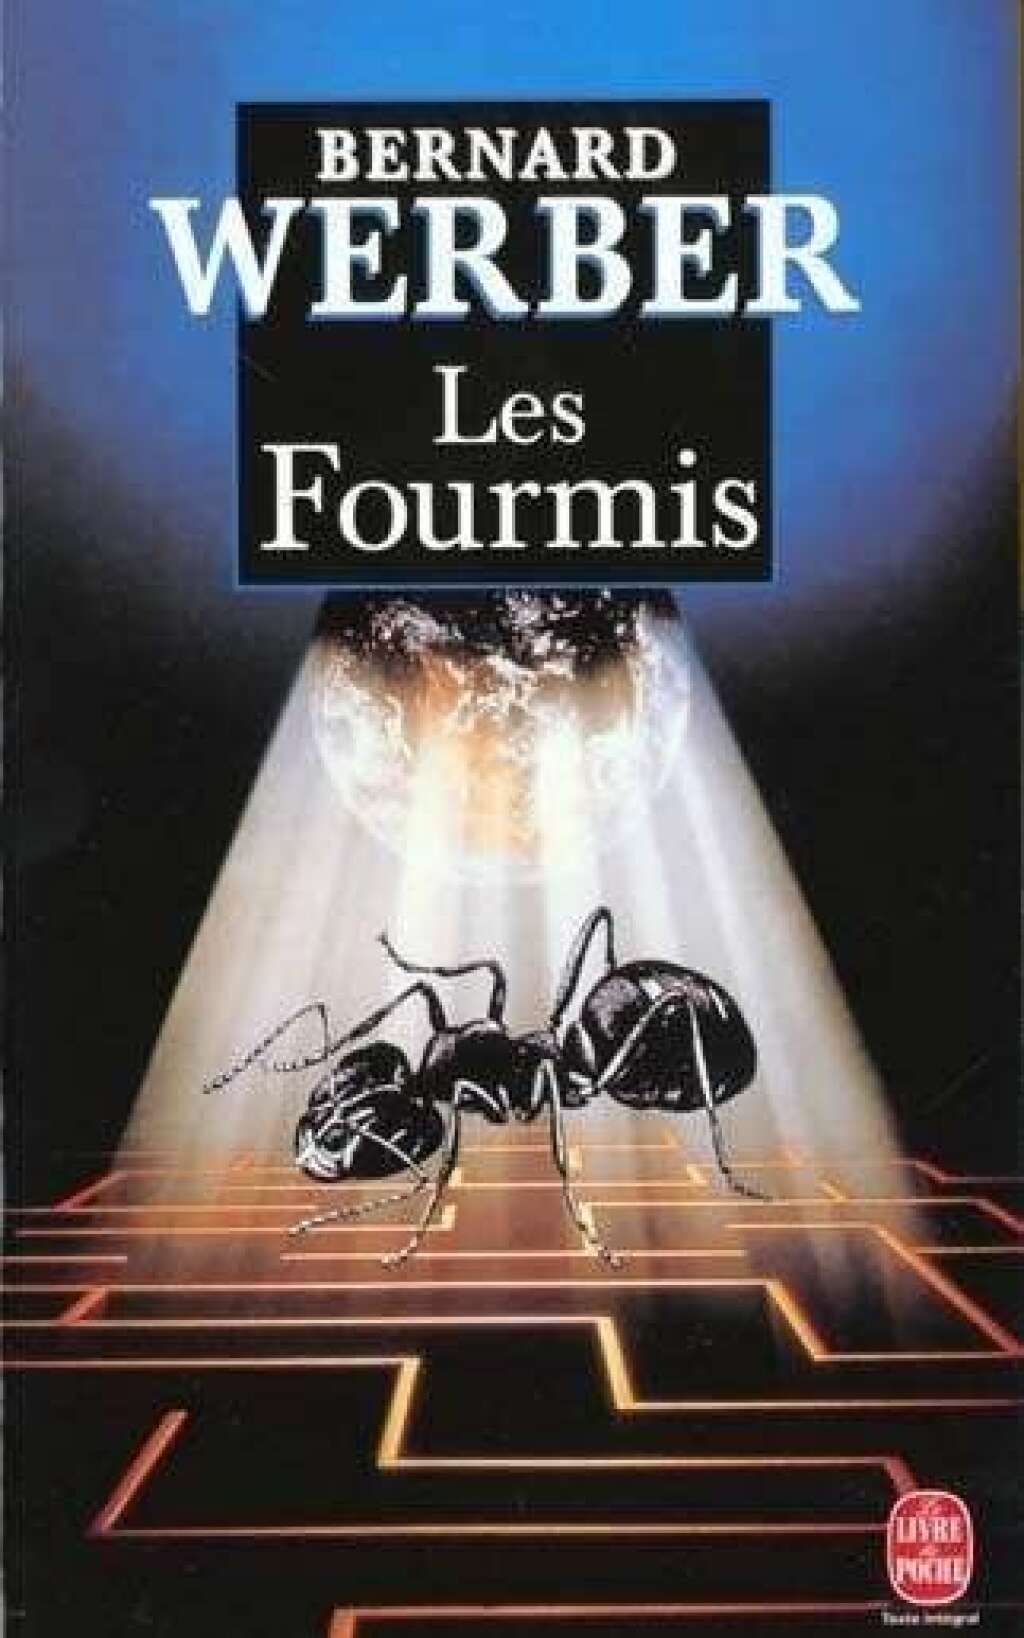 Réponse: "Les Fourmis" (1991) de Bernard Werber